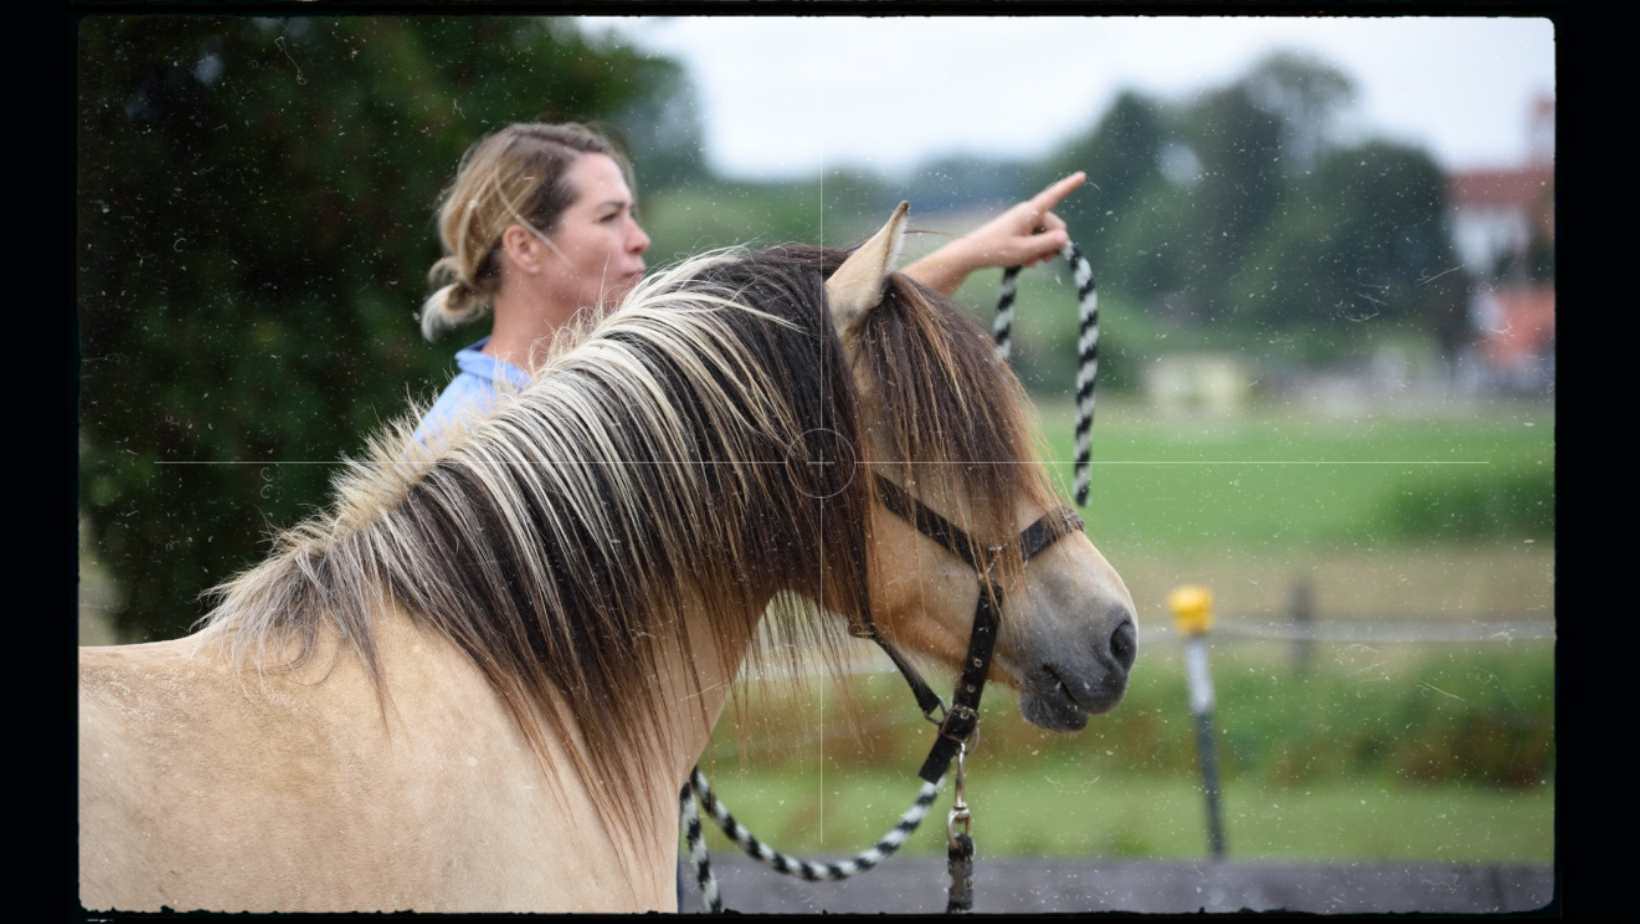 Horse Speak Basis Online-Seminar mit Kirsti Ludwig